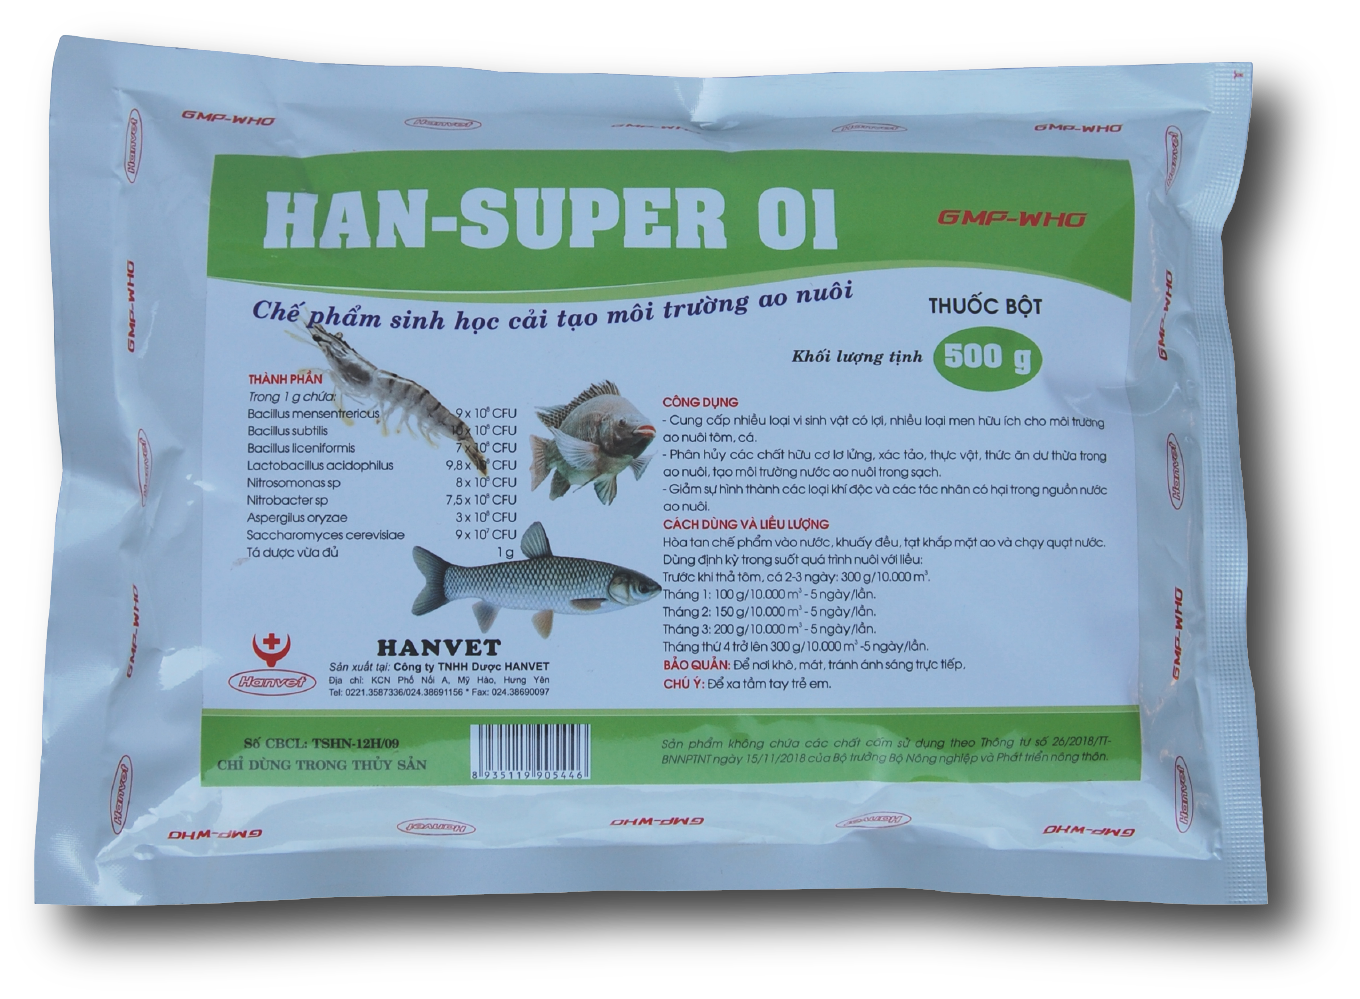 HAN-SUPER 01